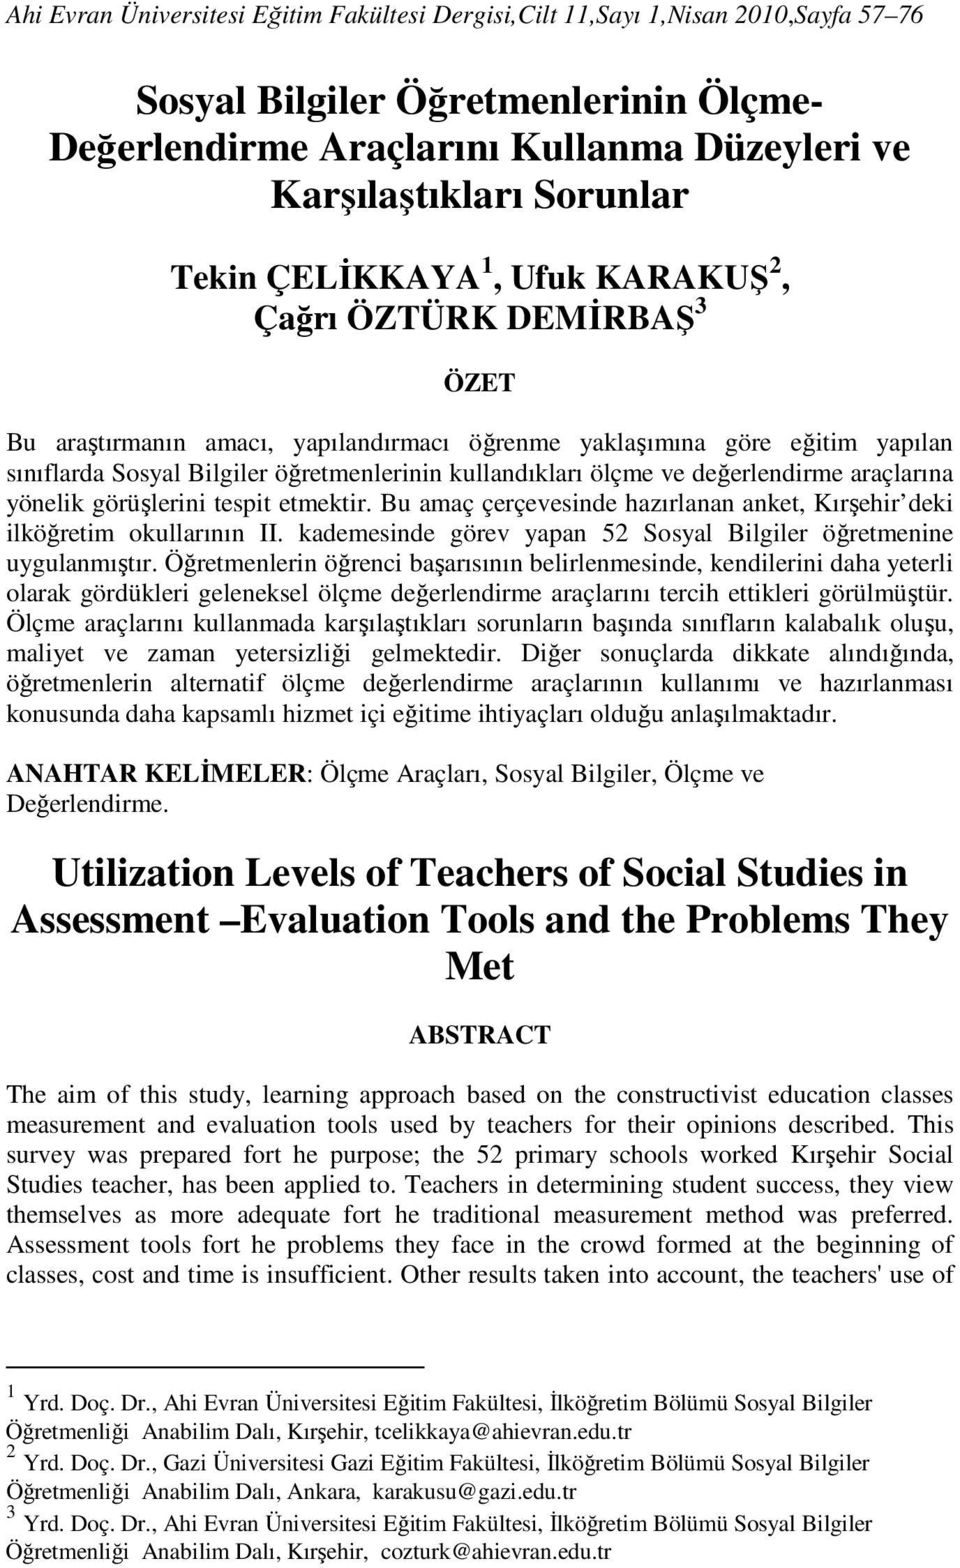 araçlarına yönelik görüşlerini tespit etmektir. Bu amaç çerçevesinde hazırlanan anket, Kırşehir deki ilköğretim okullarının II. kademesinde görev yapan Sosyal Bilgiler öğretmenine uygulanmıştır.